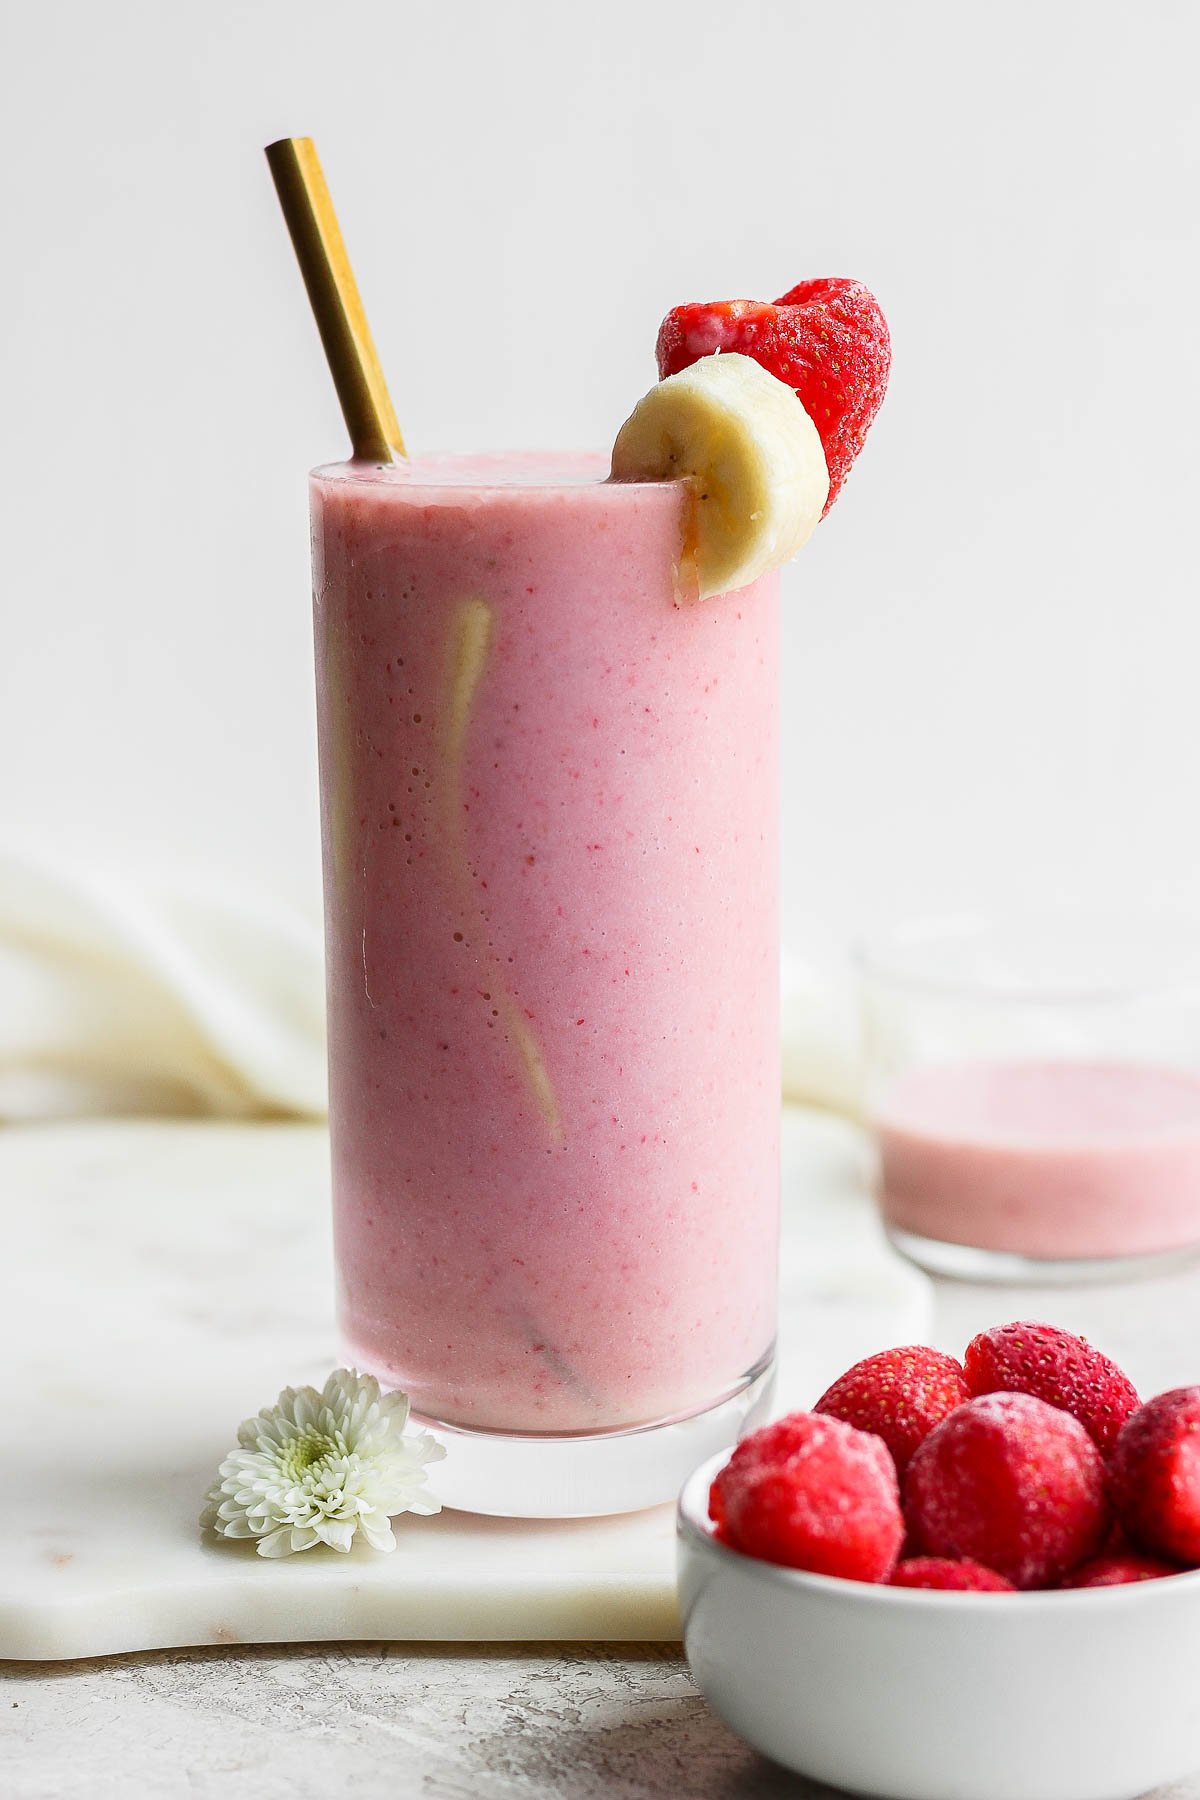 Recipe for a strawberry banana smoothie.